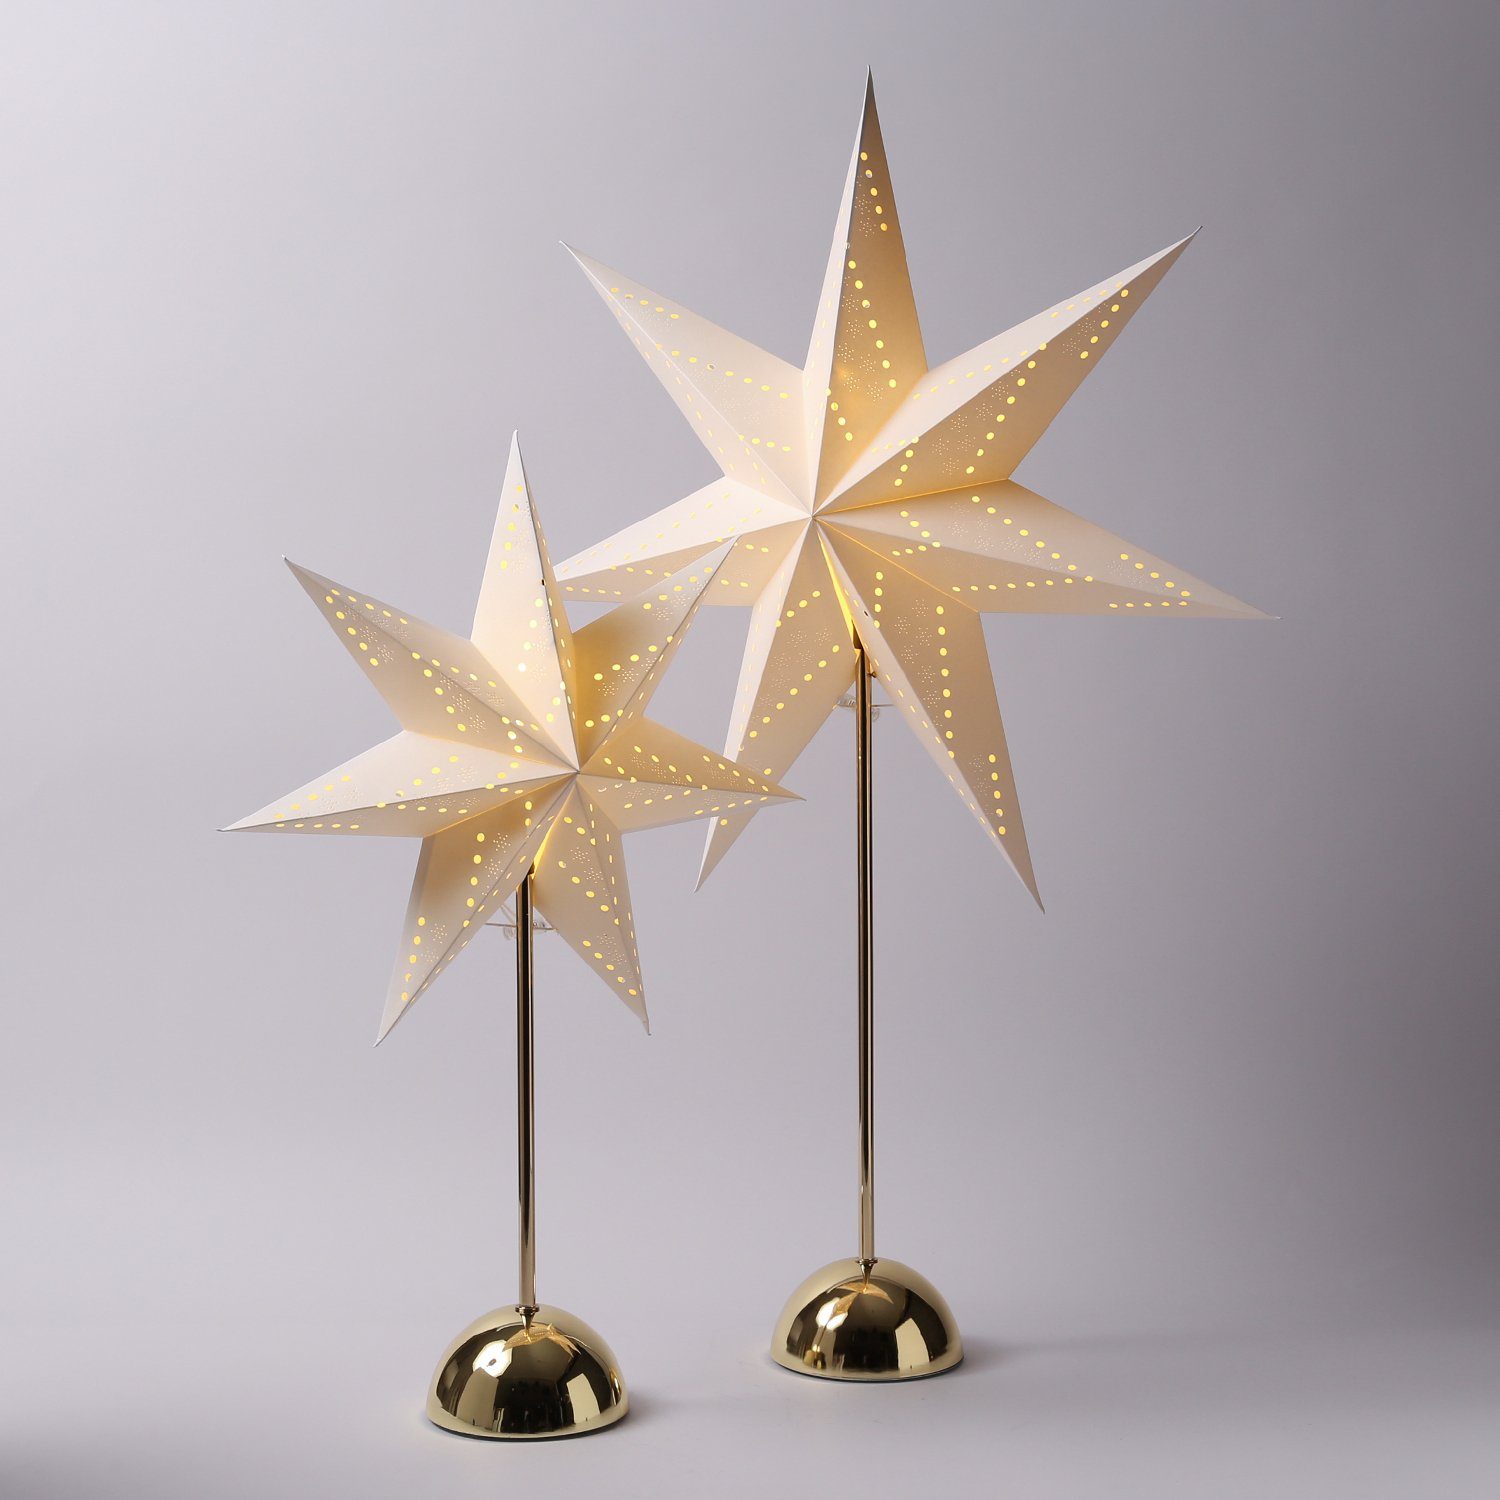 Papierstern gold 75 cm 15 LED Weihnachtsstern zum hängen Leuchtstern Timer 